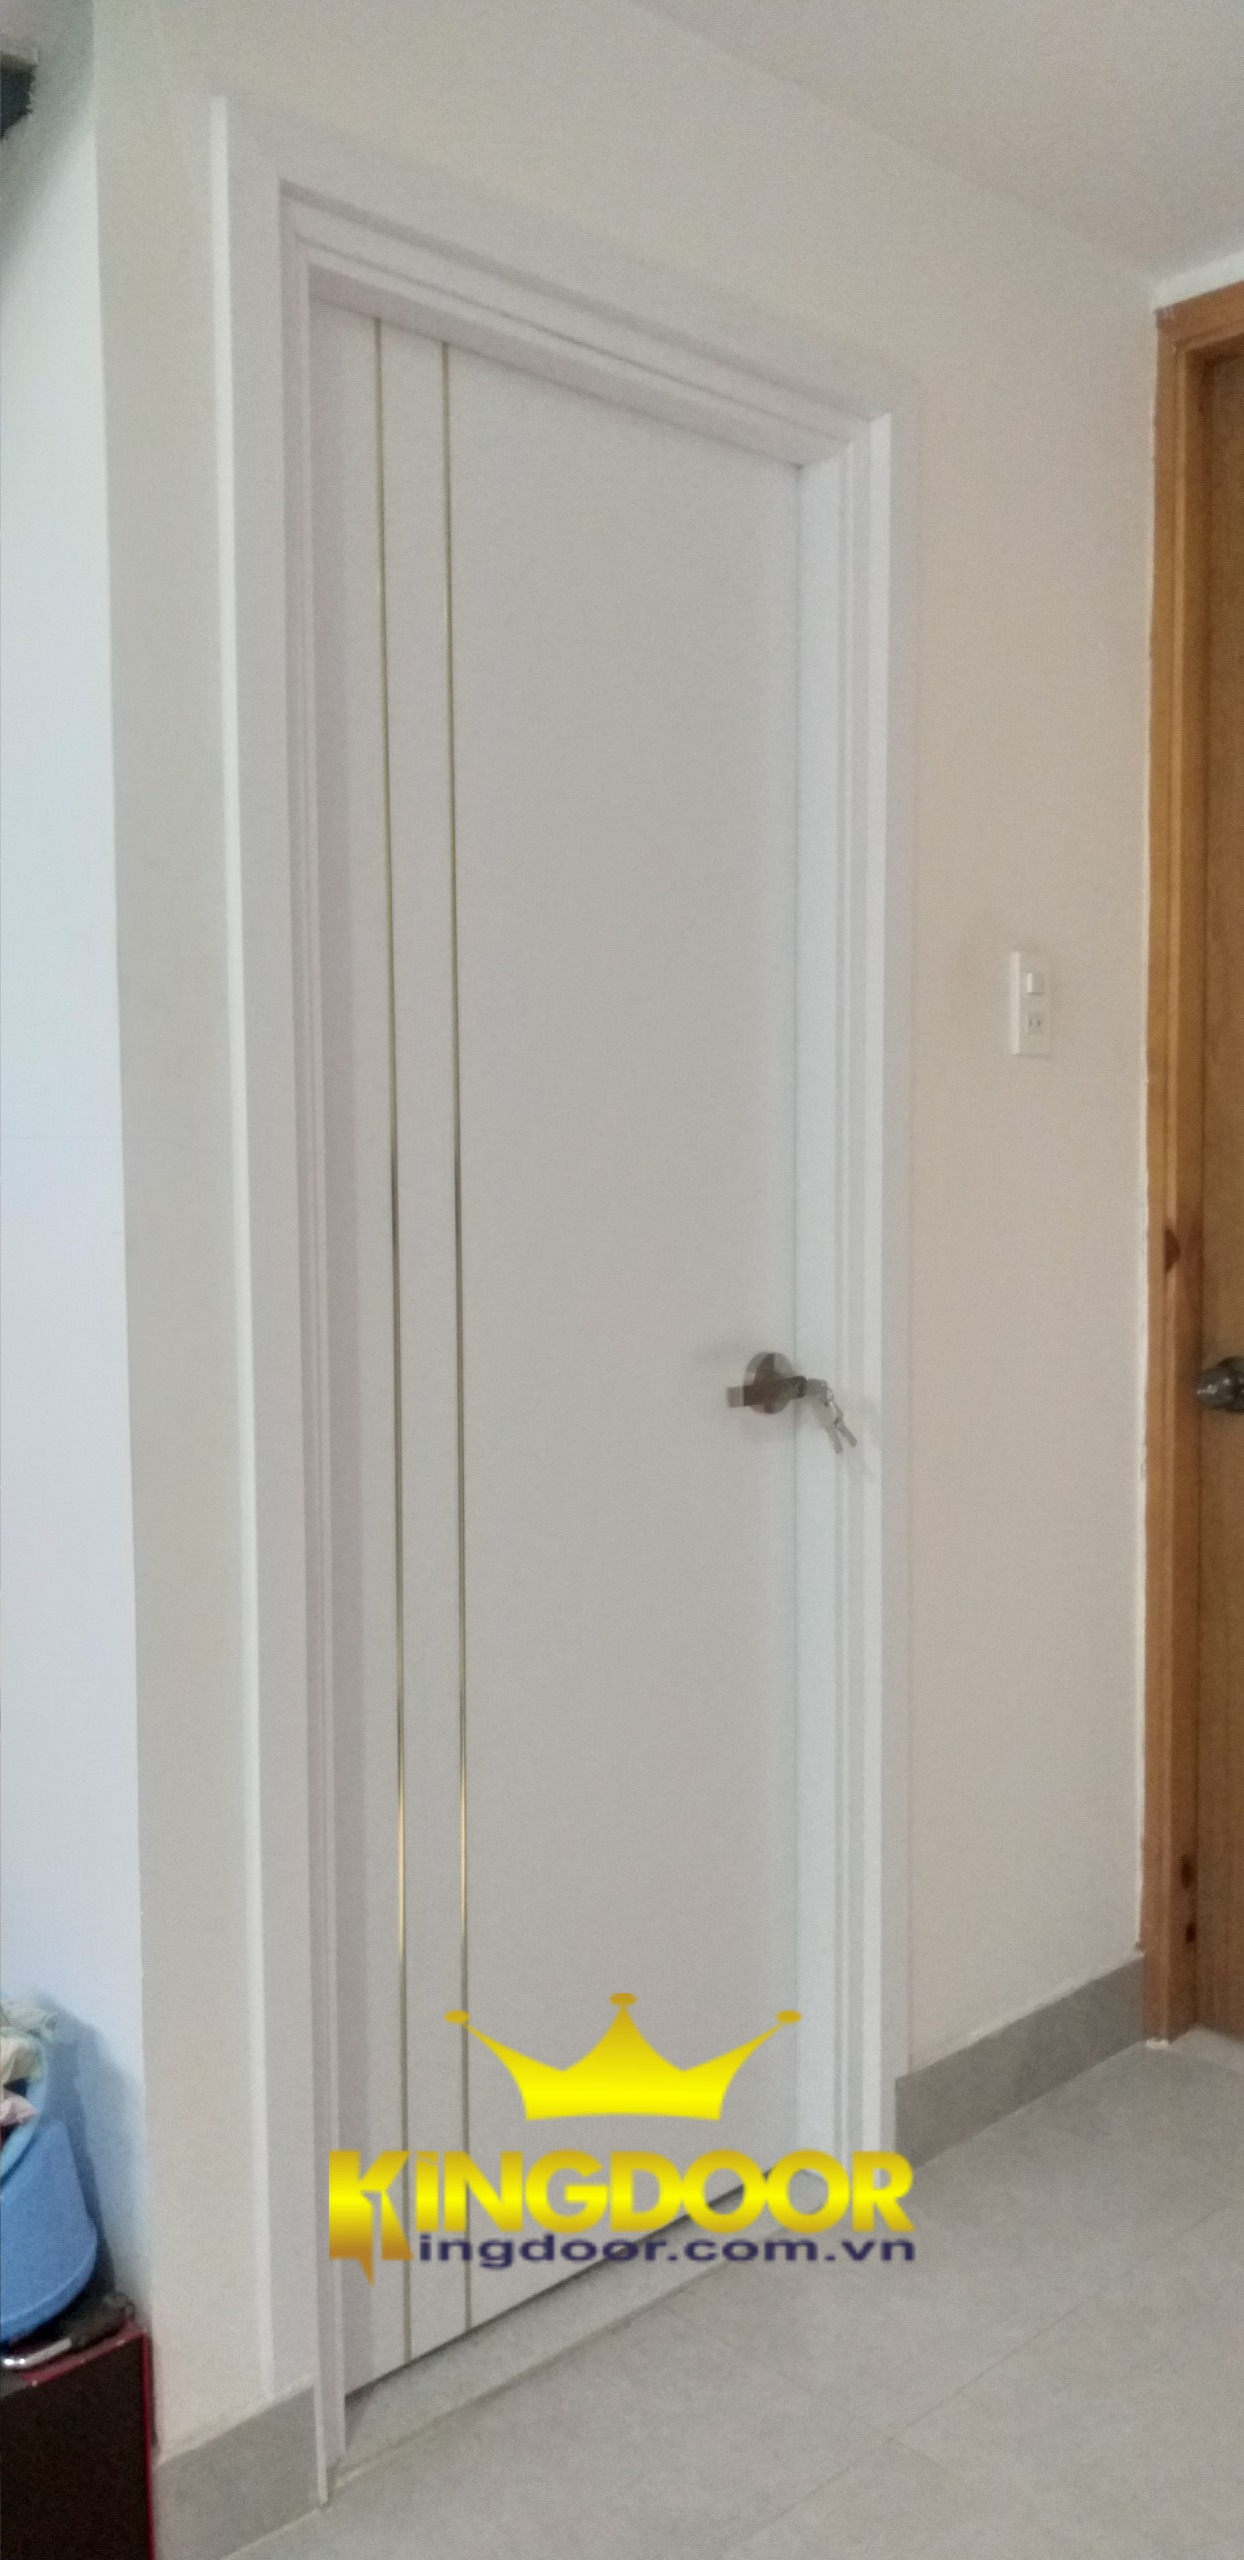 Mẫu cửa phủ da màu trắng chạy chỉ nhôm tạo nên sự sang trọng và nổi bật cho bộ cửa.